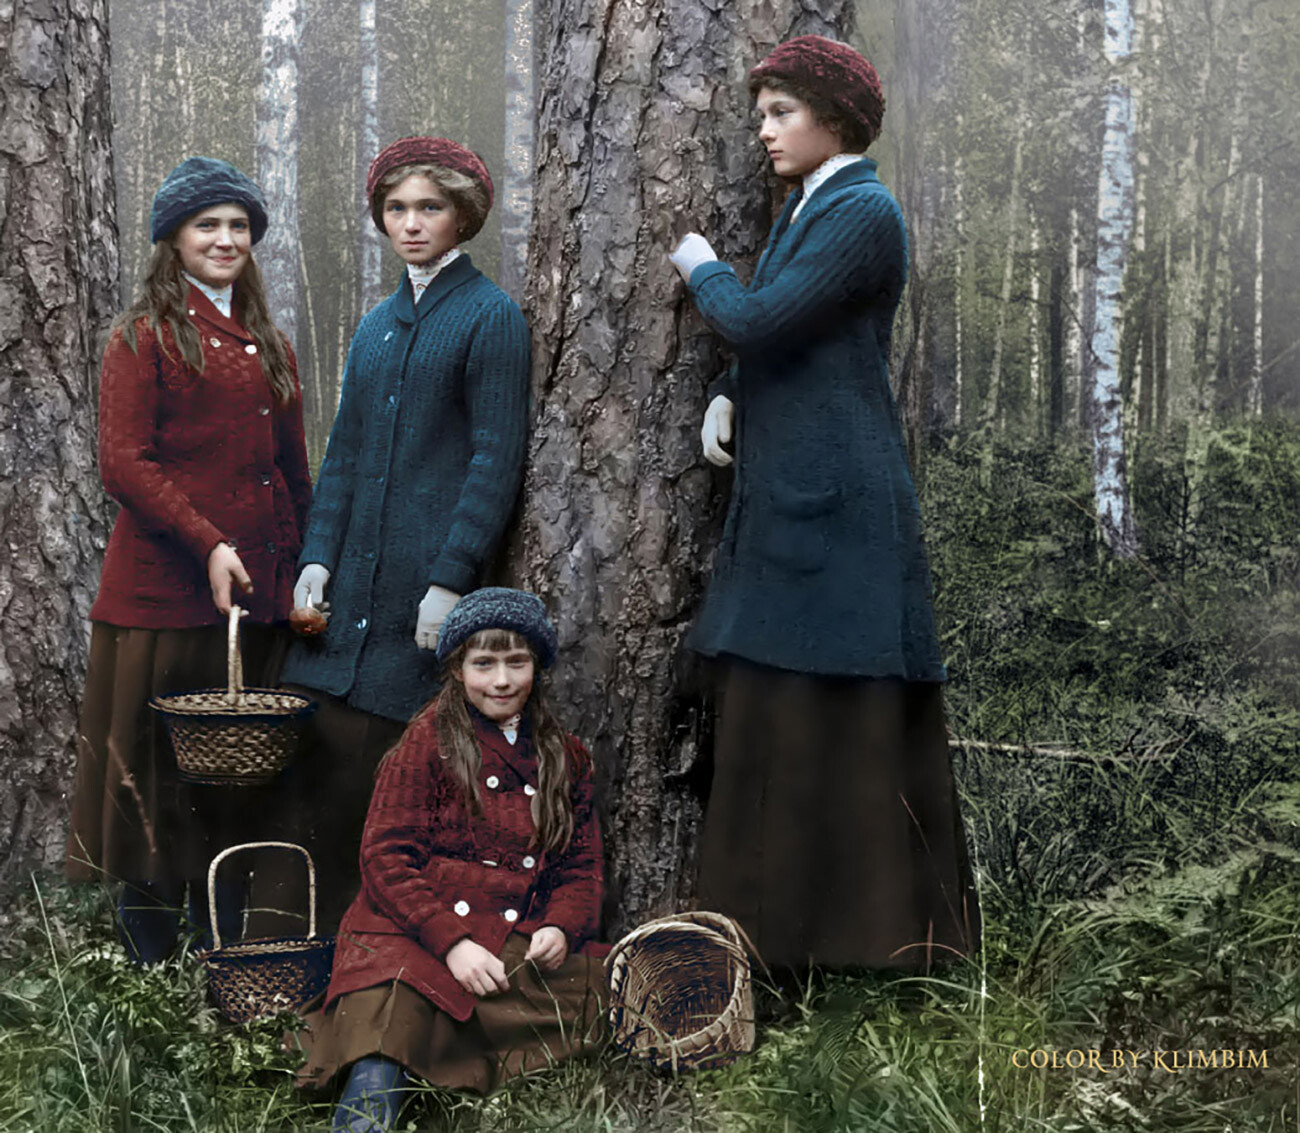 Le quattro granduchesse a cerca di funghi nella foresta

